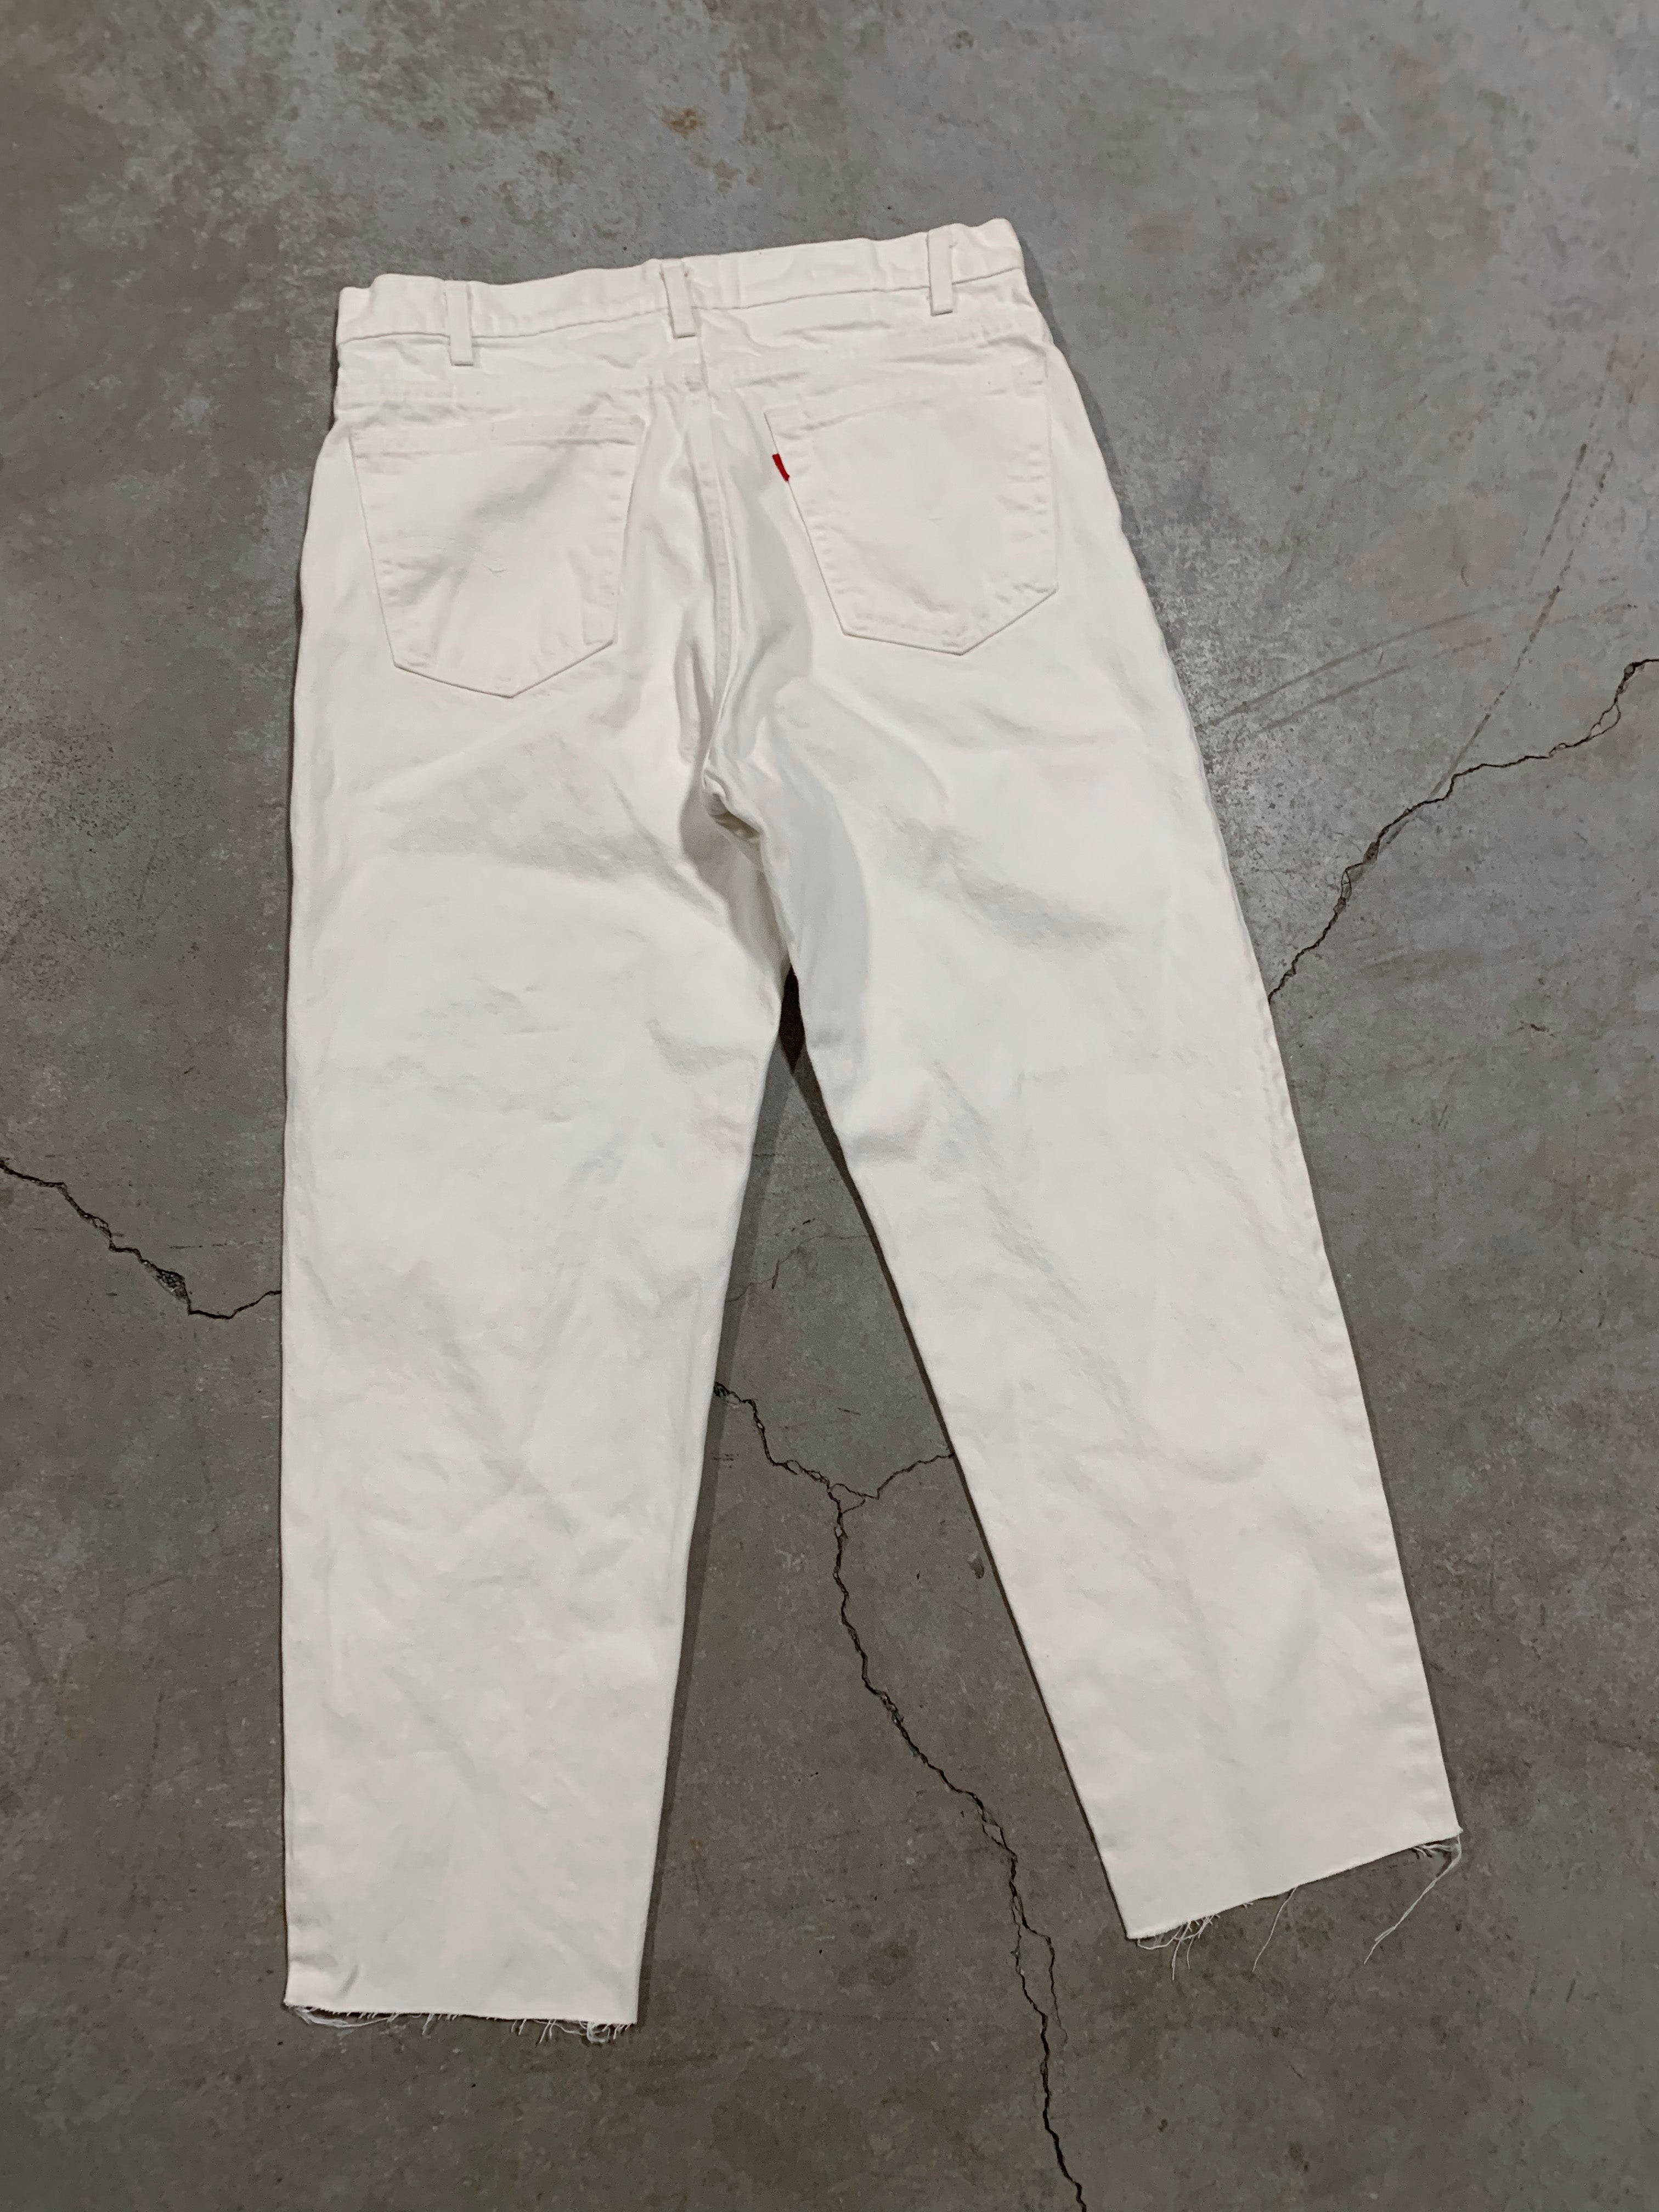 1990s White Levi’s 550 [34 x 29]